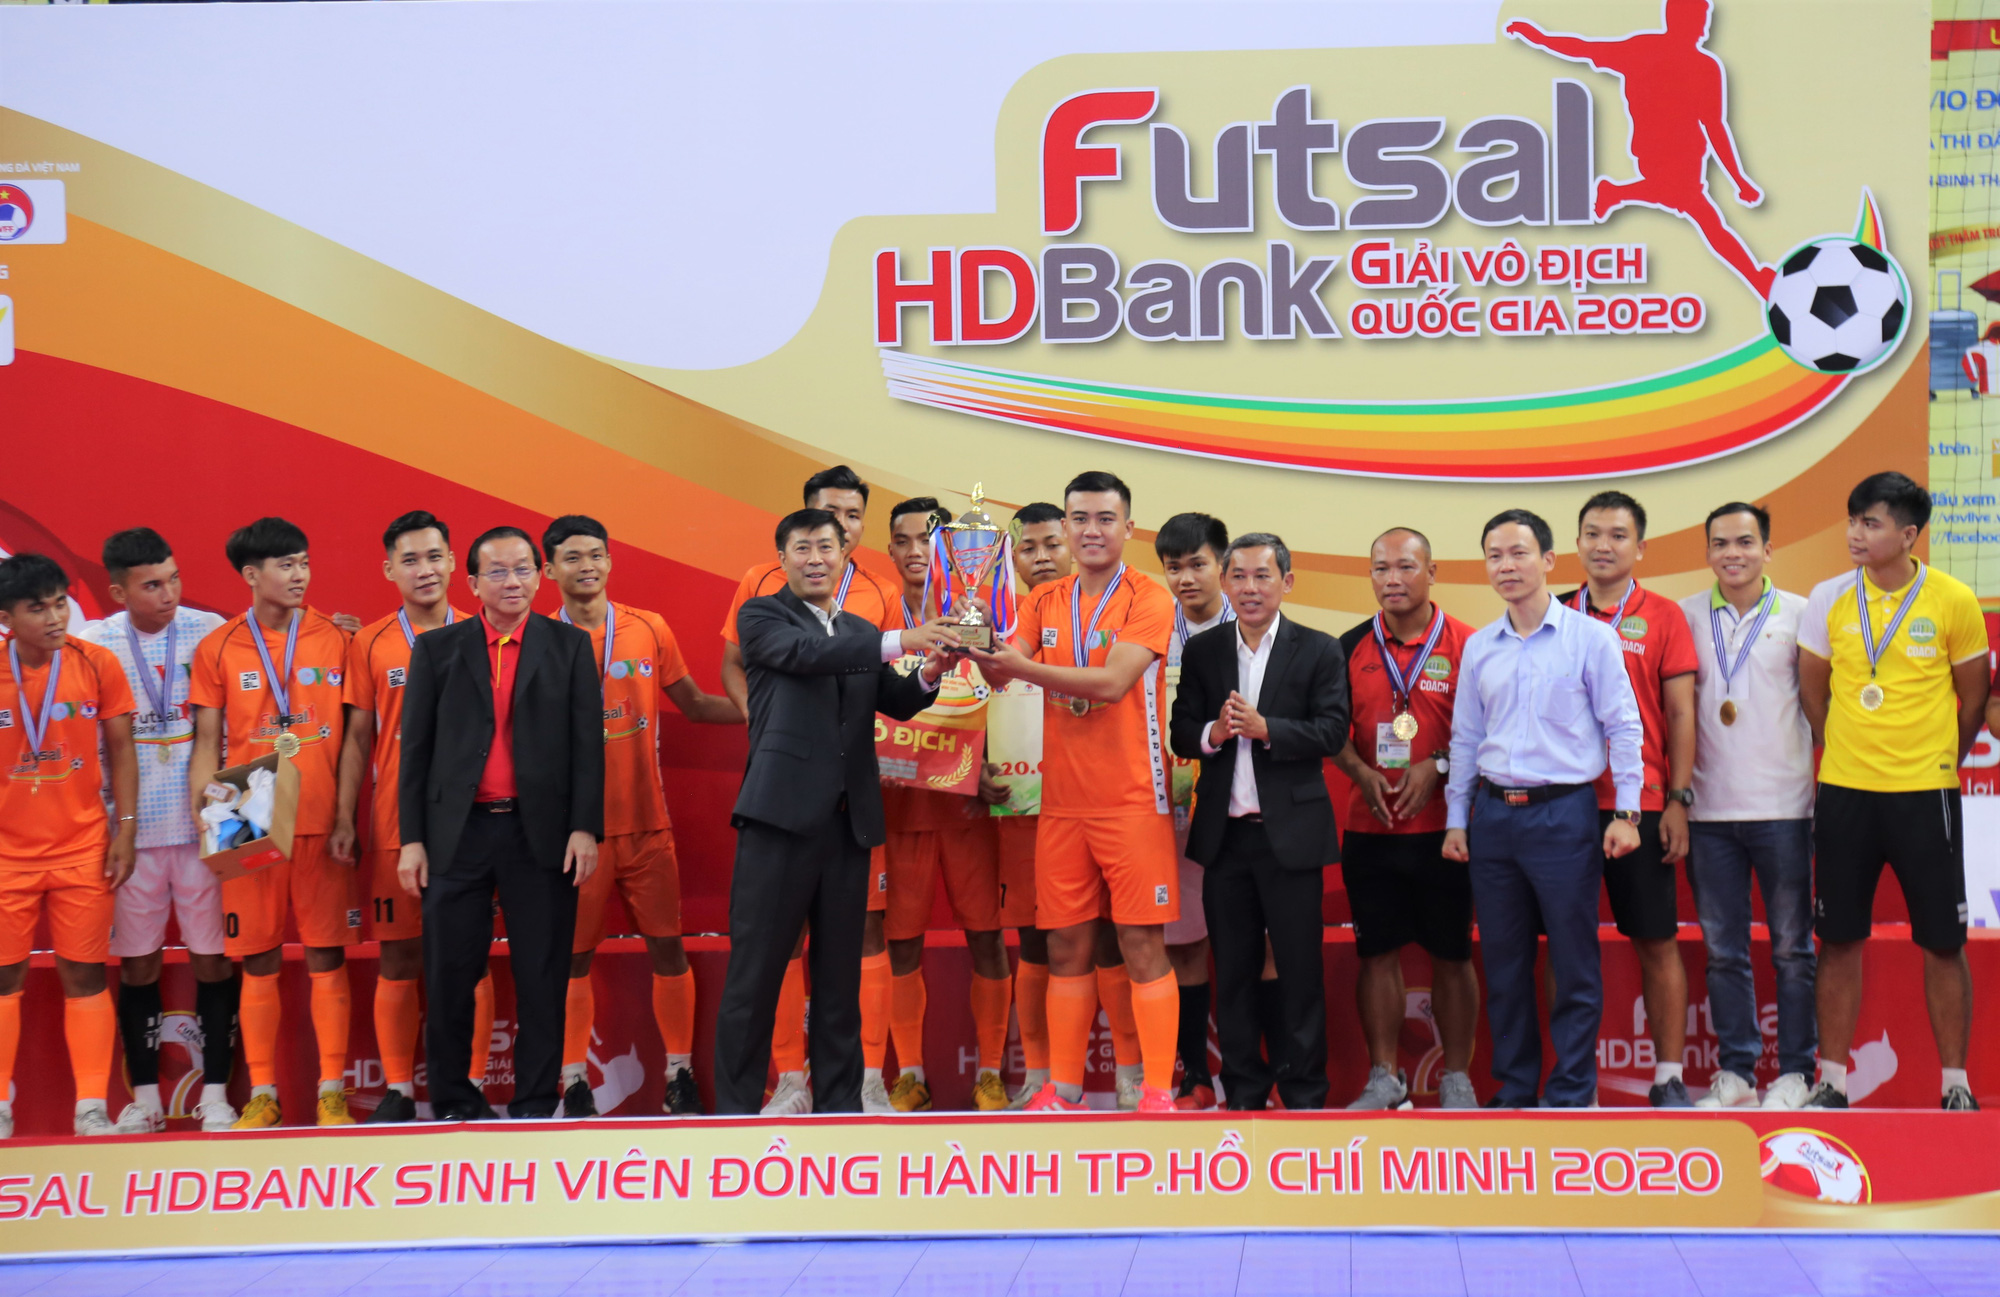 Giải futsal HDBank vô địch quốc gia 2020: khép lại với nhiều dấu ấn đặc biệt - Ảnh 4.